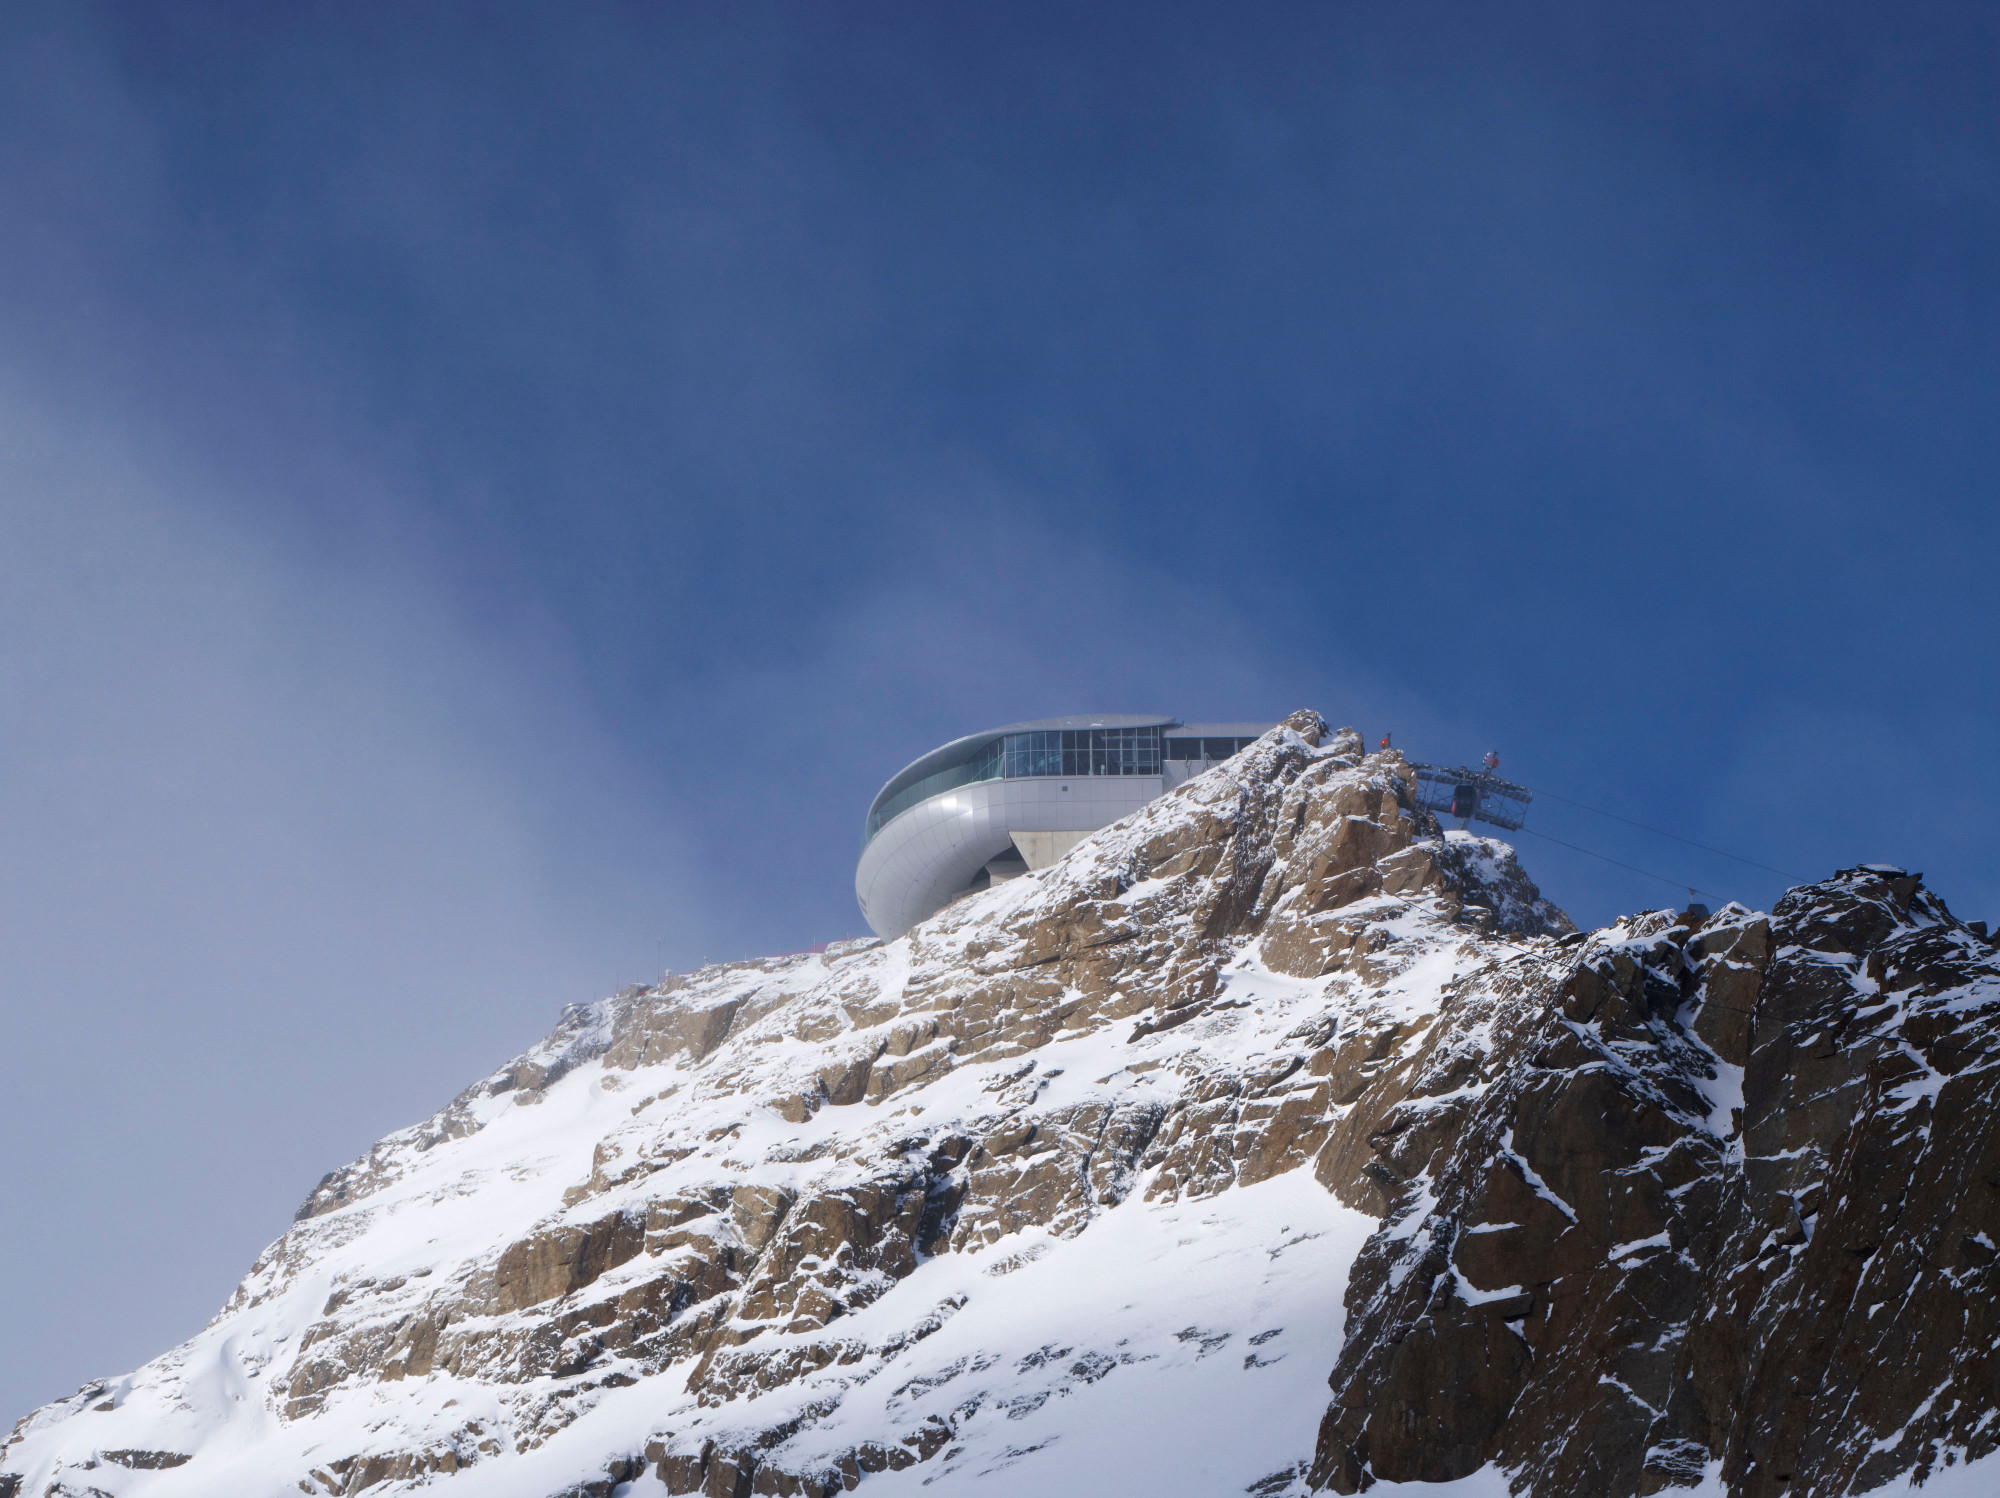 Die Architektur der Bergstation ergab sich aus den natürlichen Rahmenbedingungen und der technischen Machbarkeit